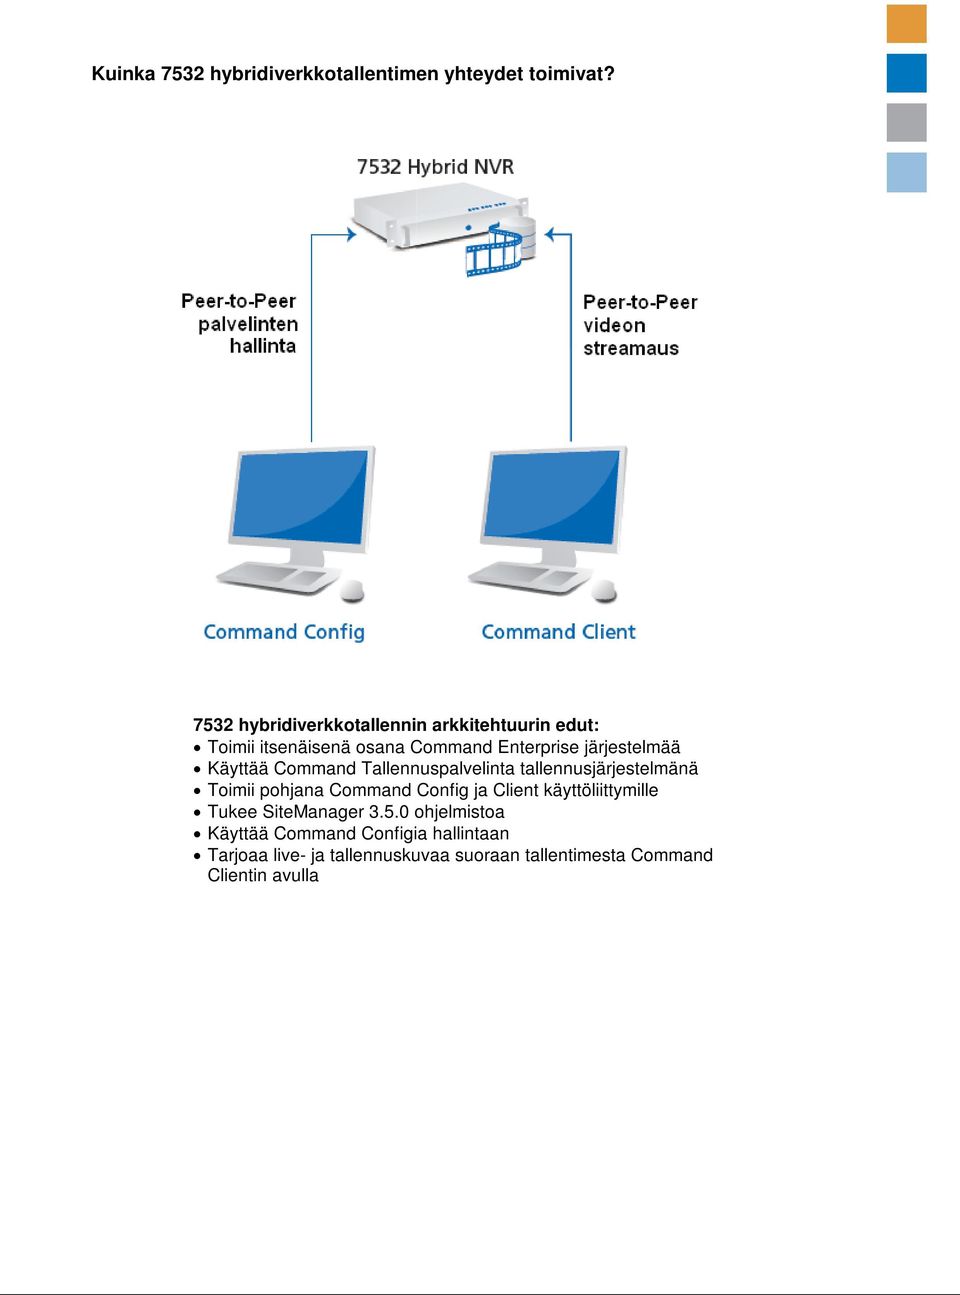 Käyttää Command Tallennuspalvelinta tallennusjärjestelmänä Toimii pohjana Command Config ja Client